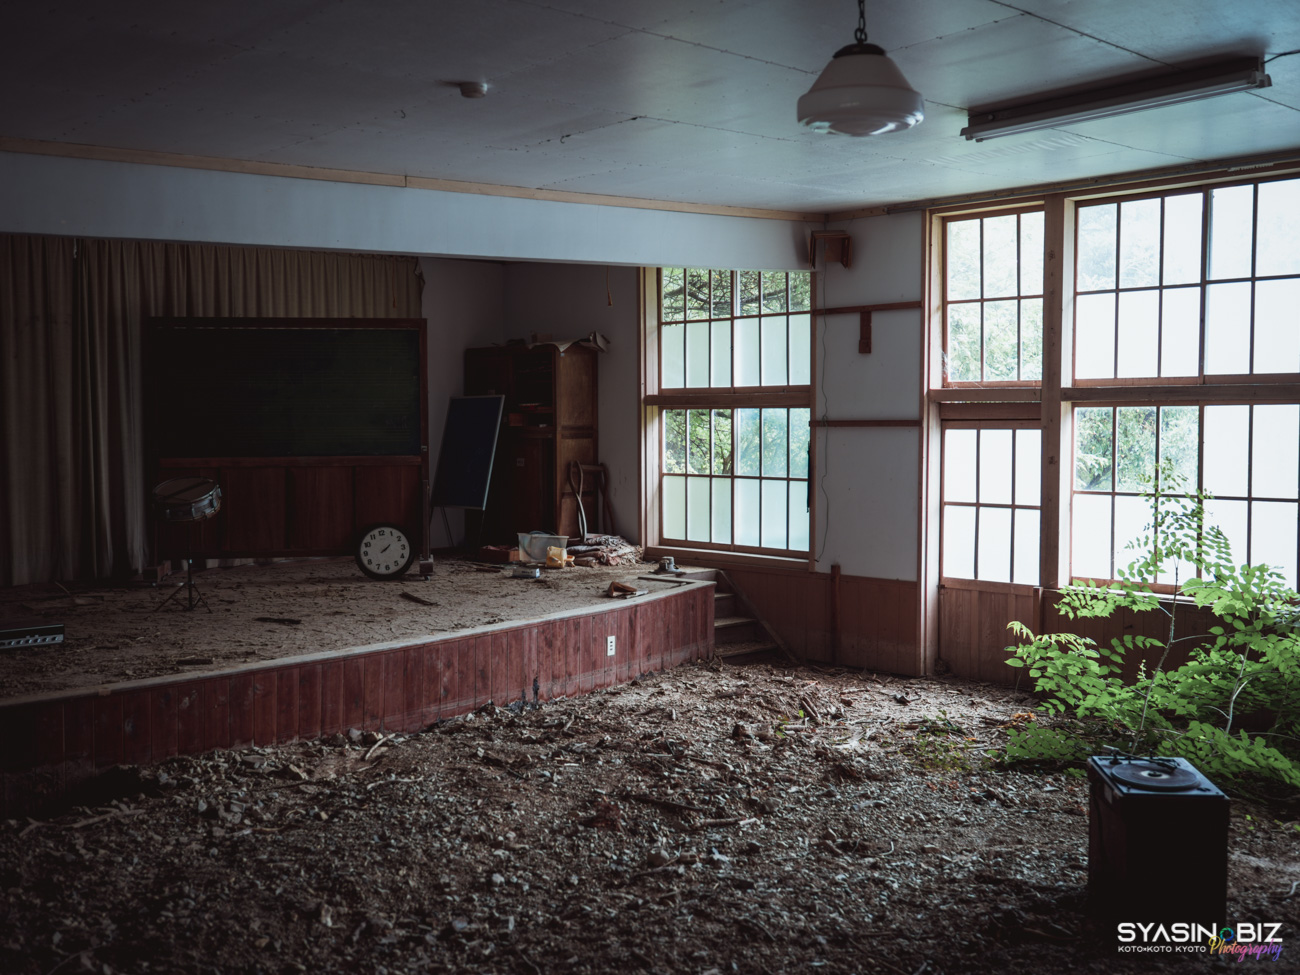 ガリバーの廃小学校 – 昭和の終わりと共に幕を閉じた小学校